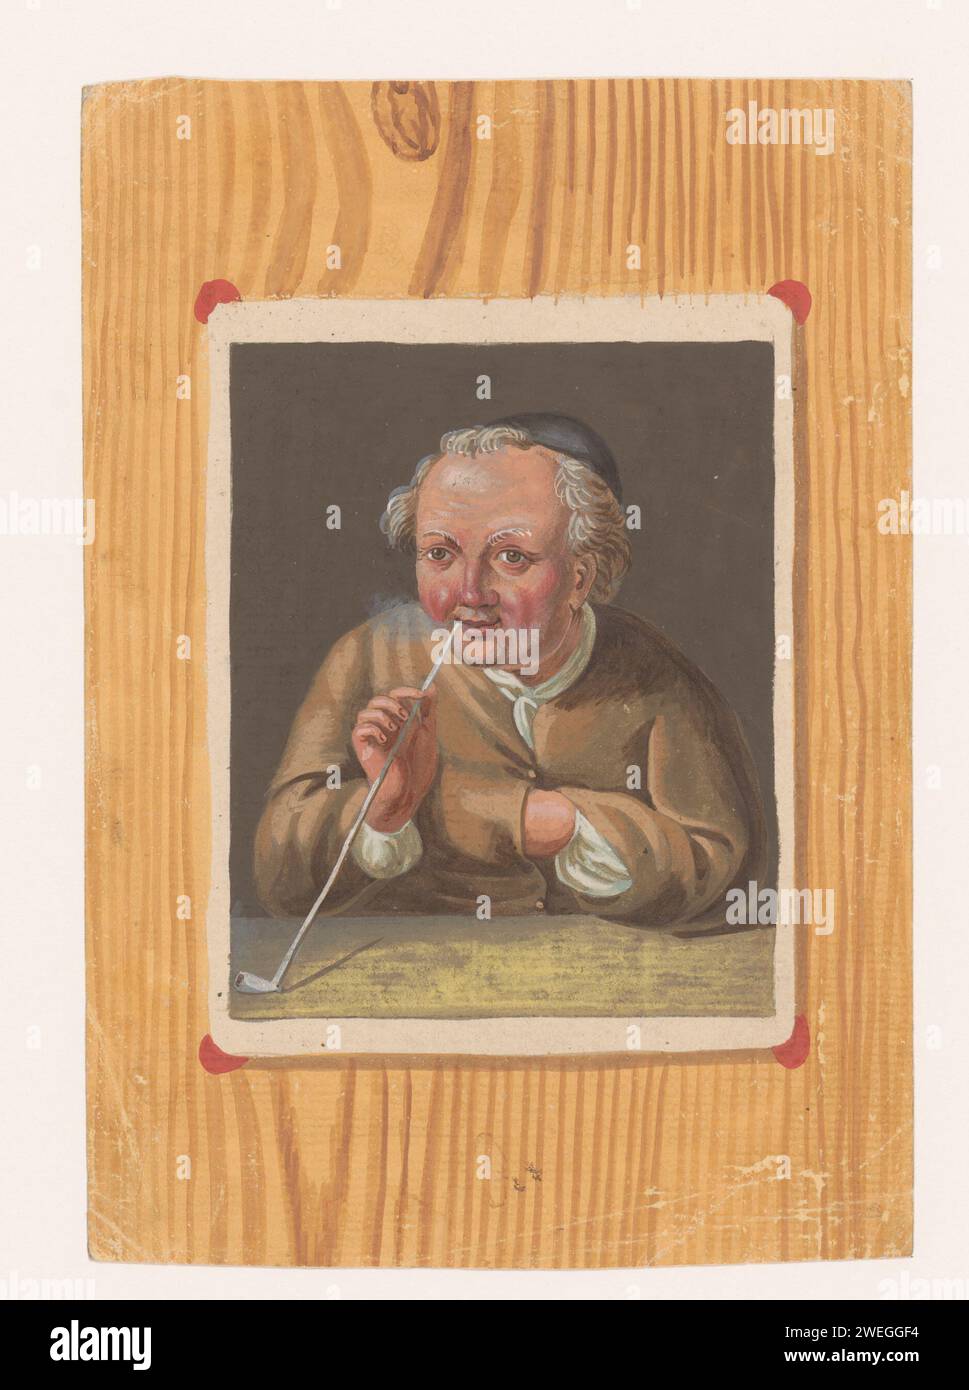 Pijprokende homme, anonyme, c. 1740 - c. 1760 imprimer trompe l'oeil : comme si la feuille avec le spectacle contre un mur en bois a été attachée. gravure sur papier 'illusion optique'. pipe ~ tabac Banque D'Images